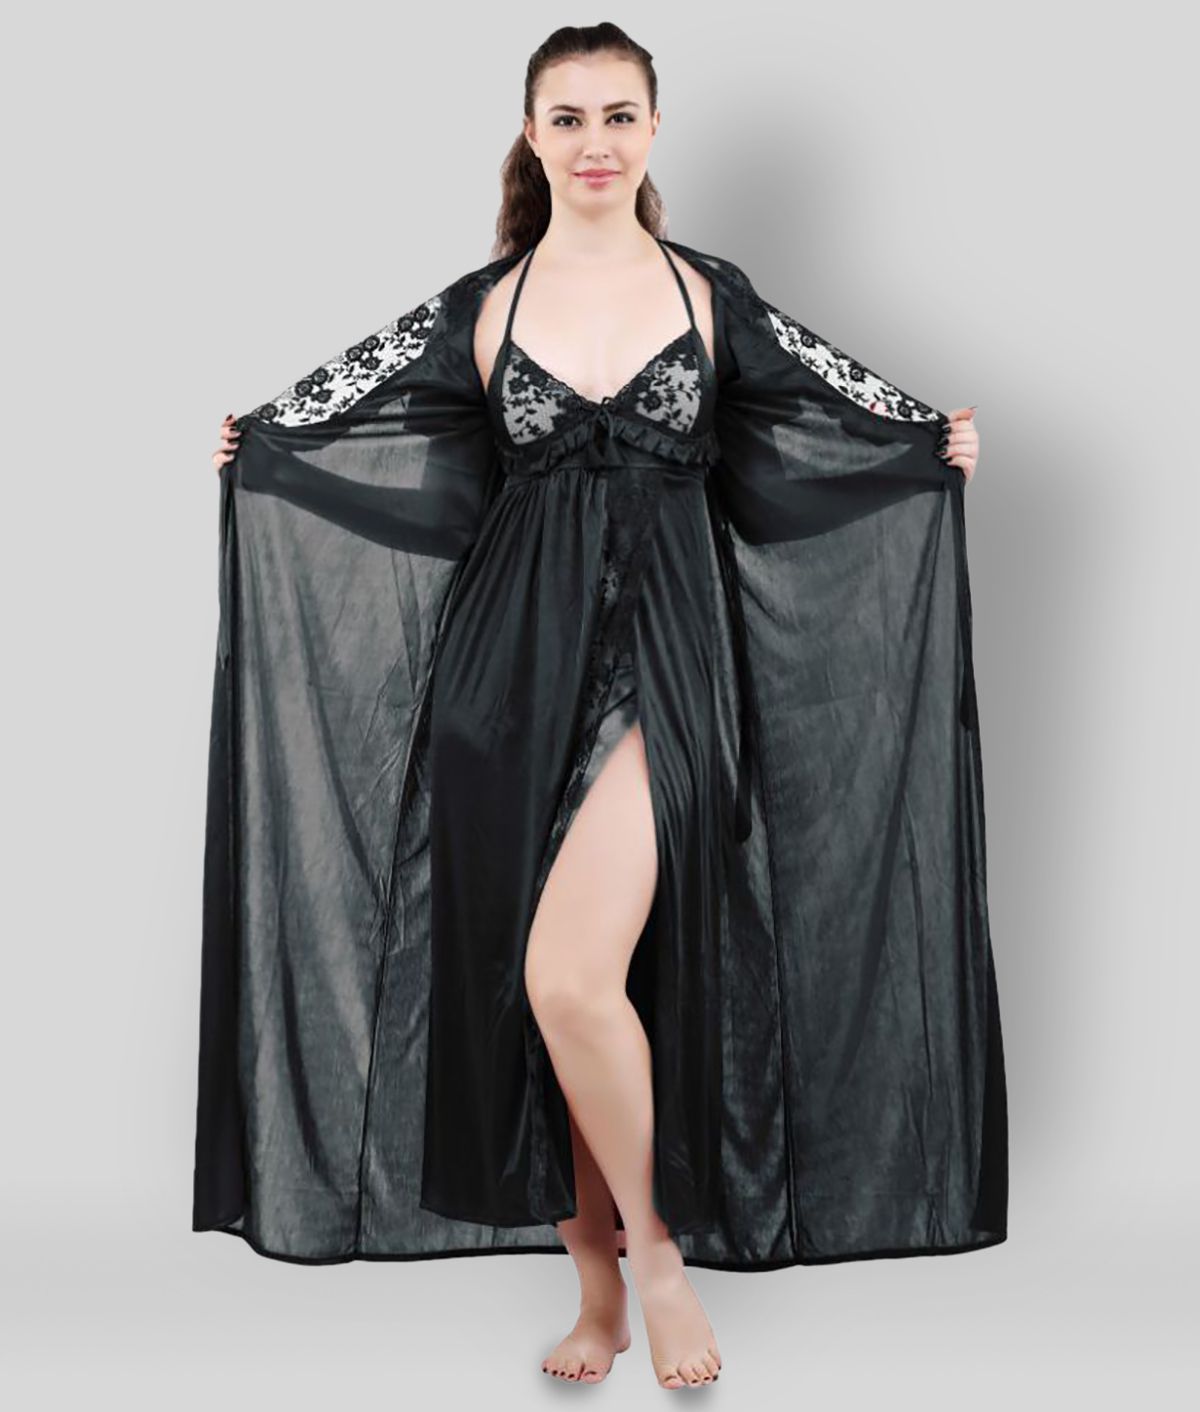     			Romaisa - Black Satin Women's Nightwear Nighty & Night Gowns ( Pack of 1 )